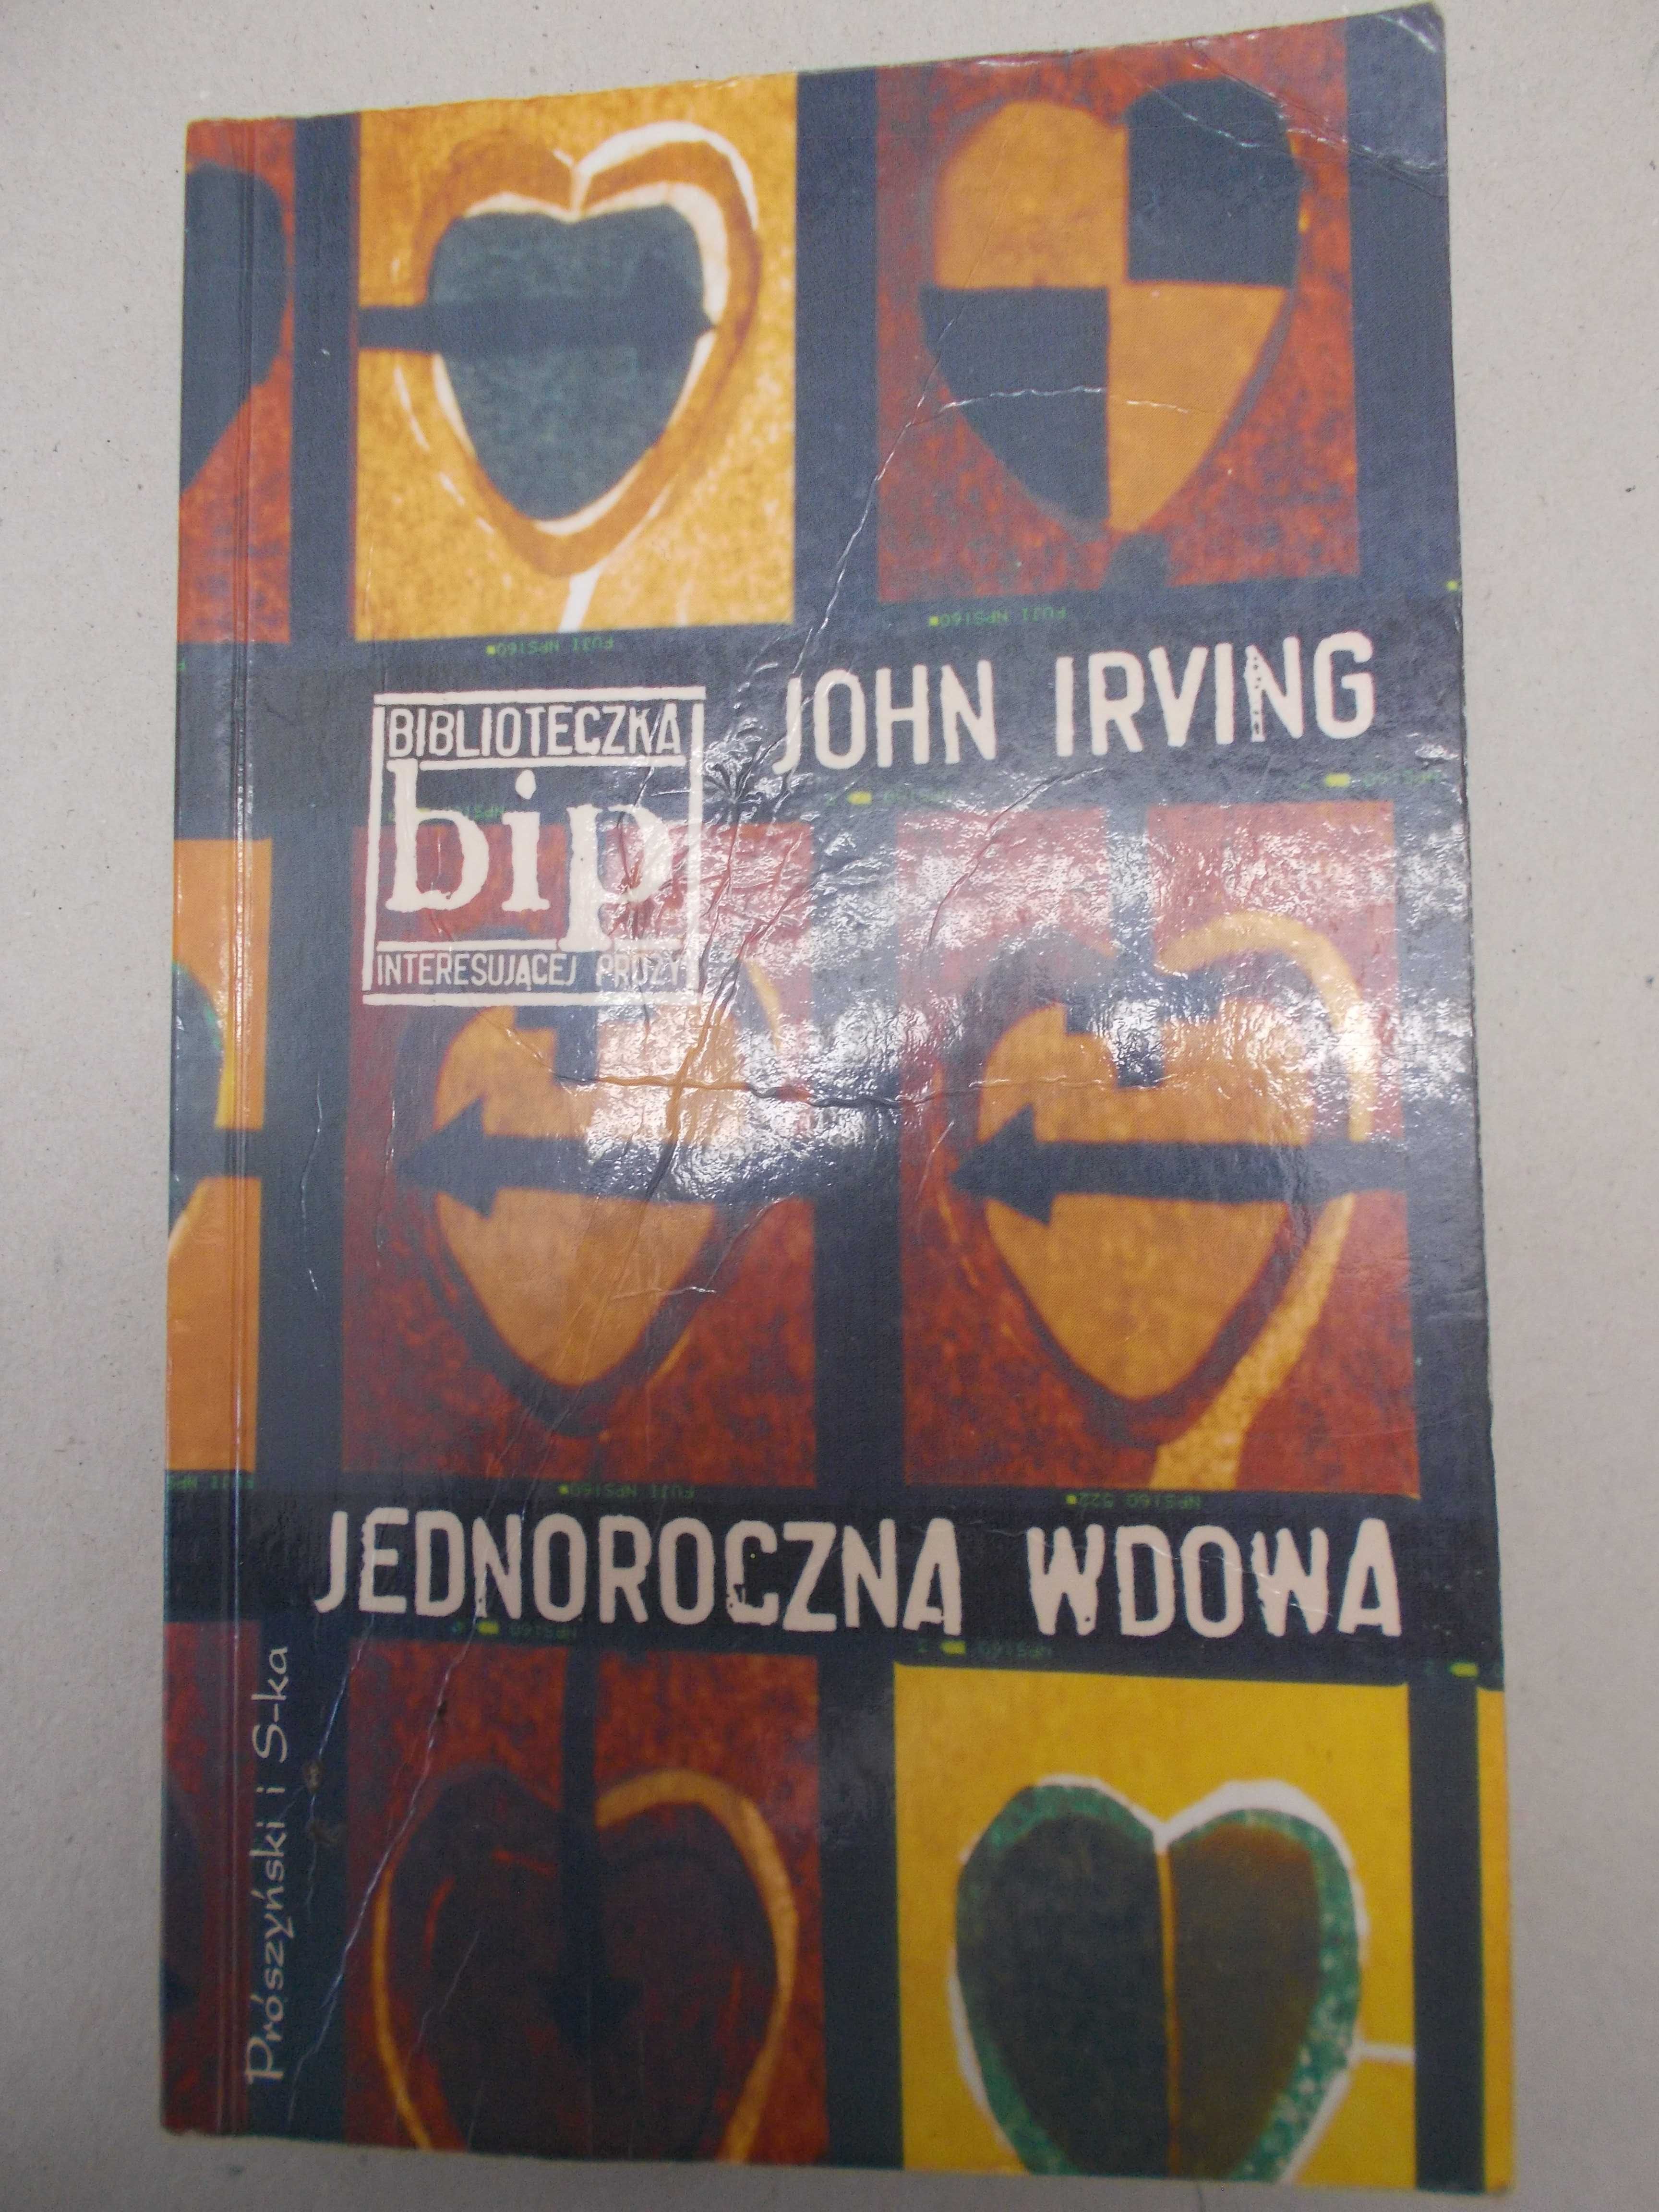 John Irving - Jednoroczna wdowa - bestseller amerykański